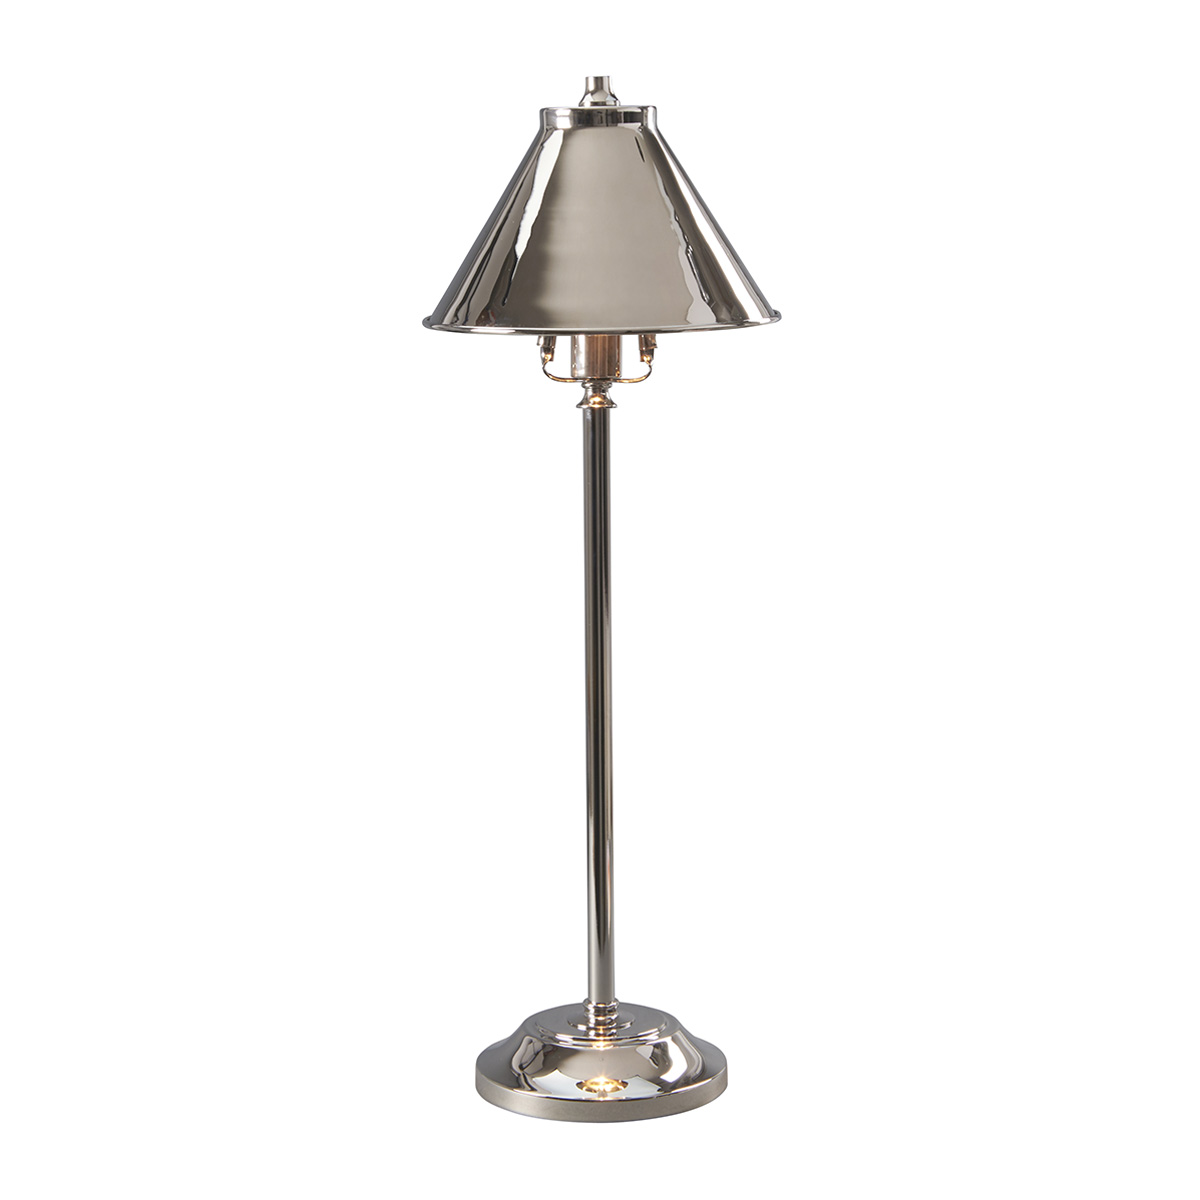 Настольная лампа PV-SL-PN, Настольные лампы Лофт | Металл | Хром/Никель | Прихожая, спальня, гостиная, столовая.